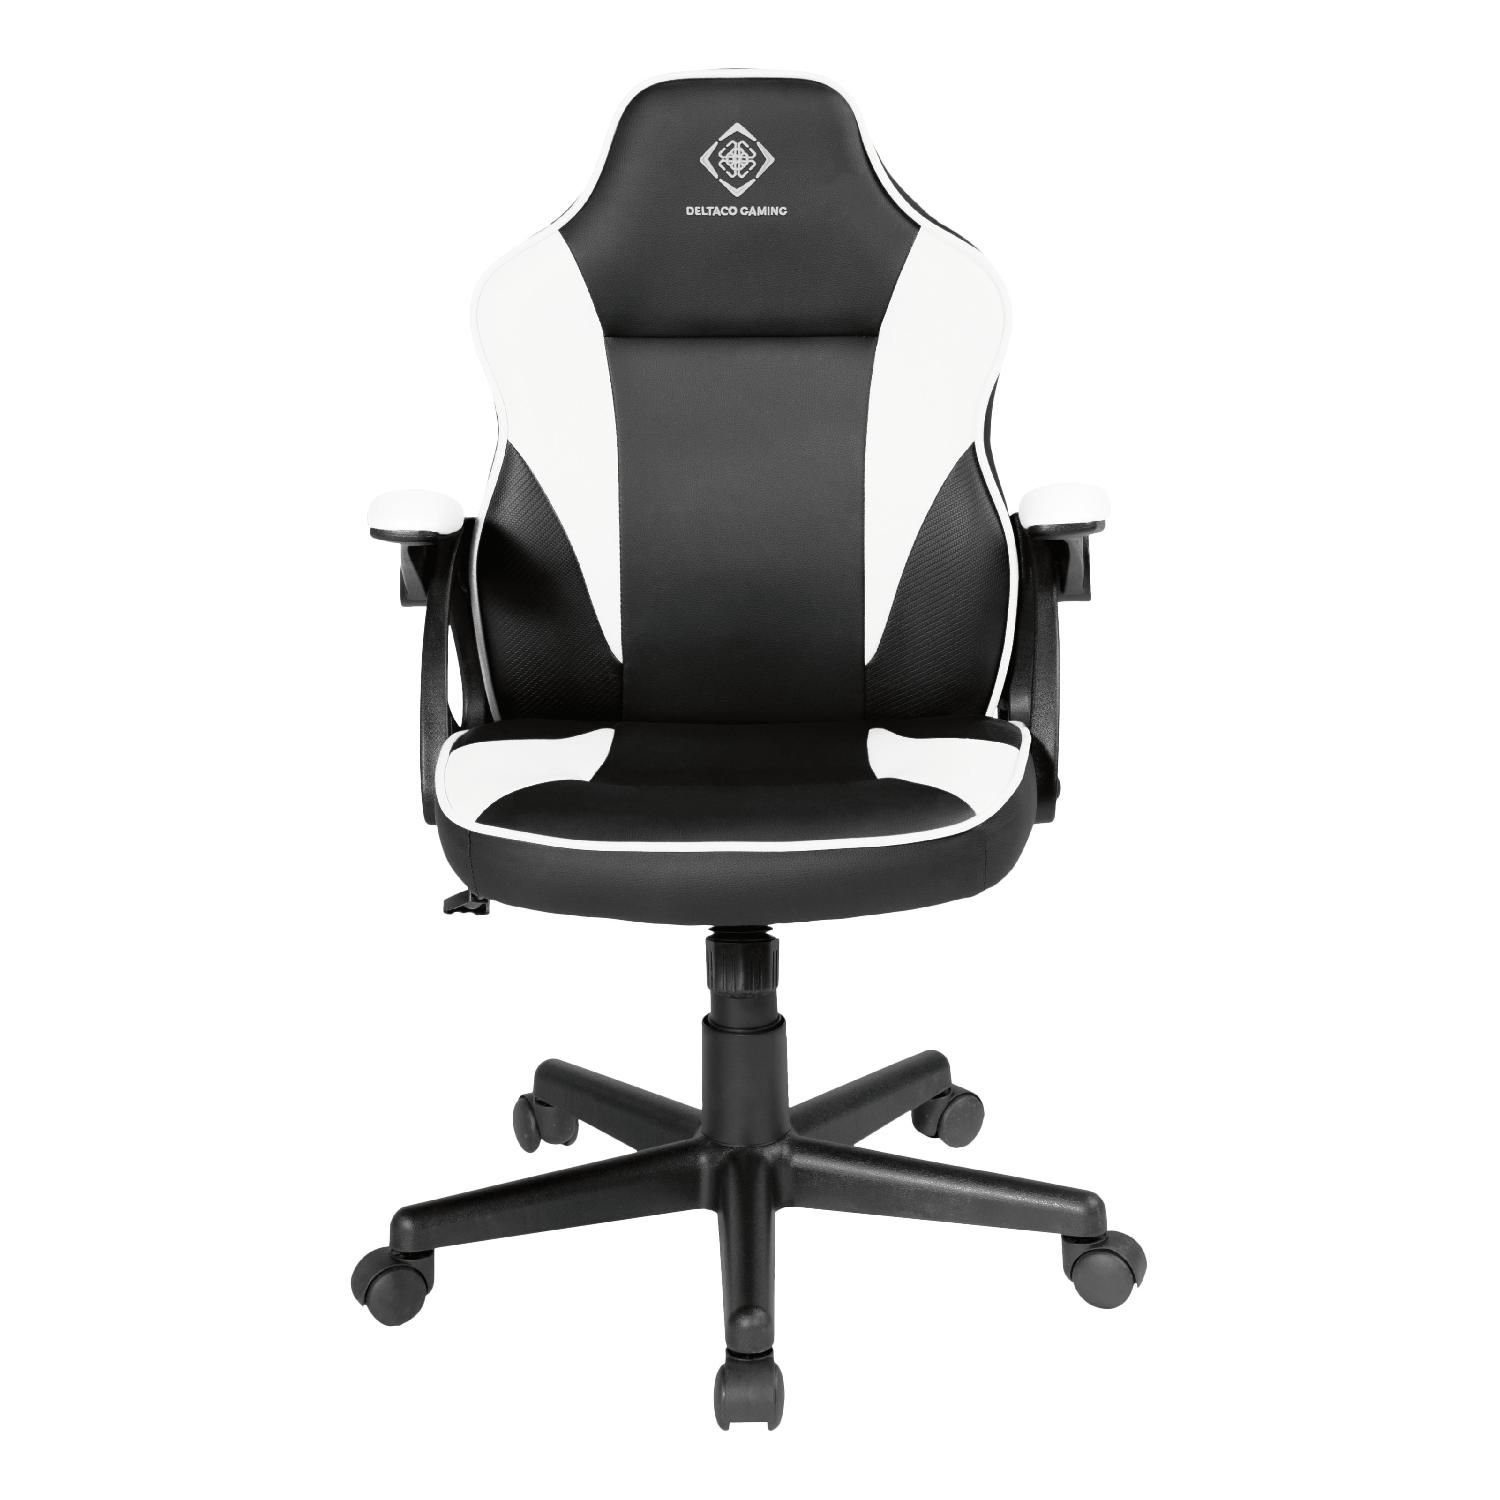 DELTACO Gaming-Stuhl Gaming Stuhl DC120 "Junior" höhenverstellbar Kunstleder, Bürostuhl für Kinder, klein, für Personen bis 150 cm schwarz/weiß